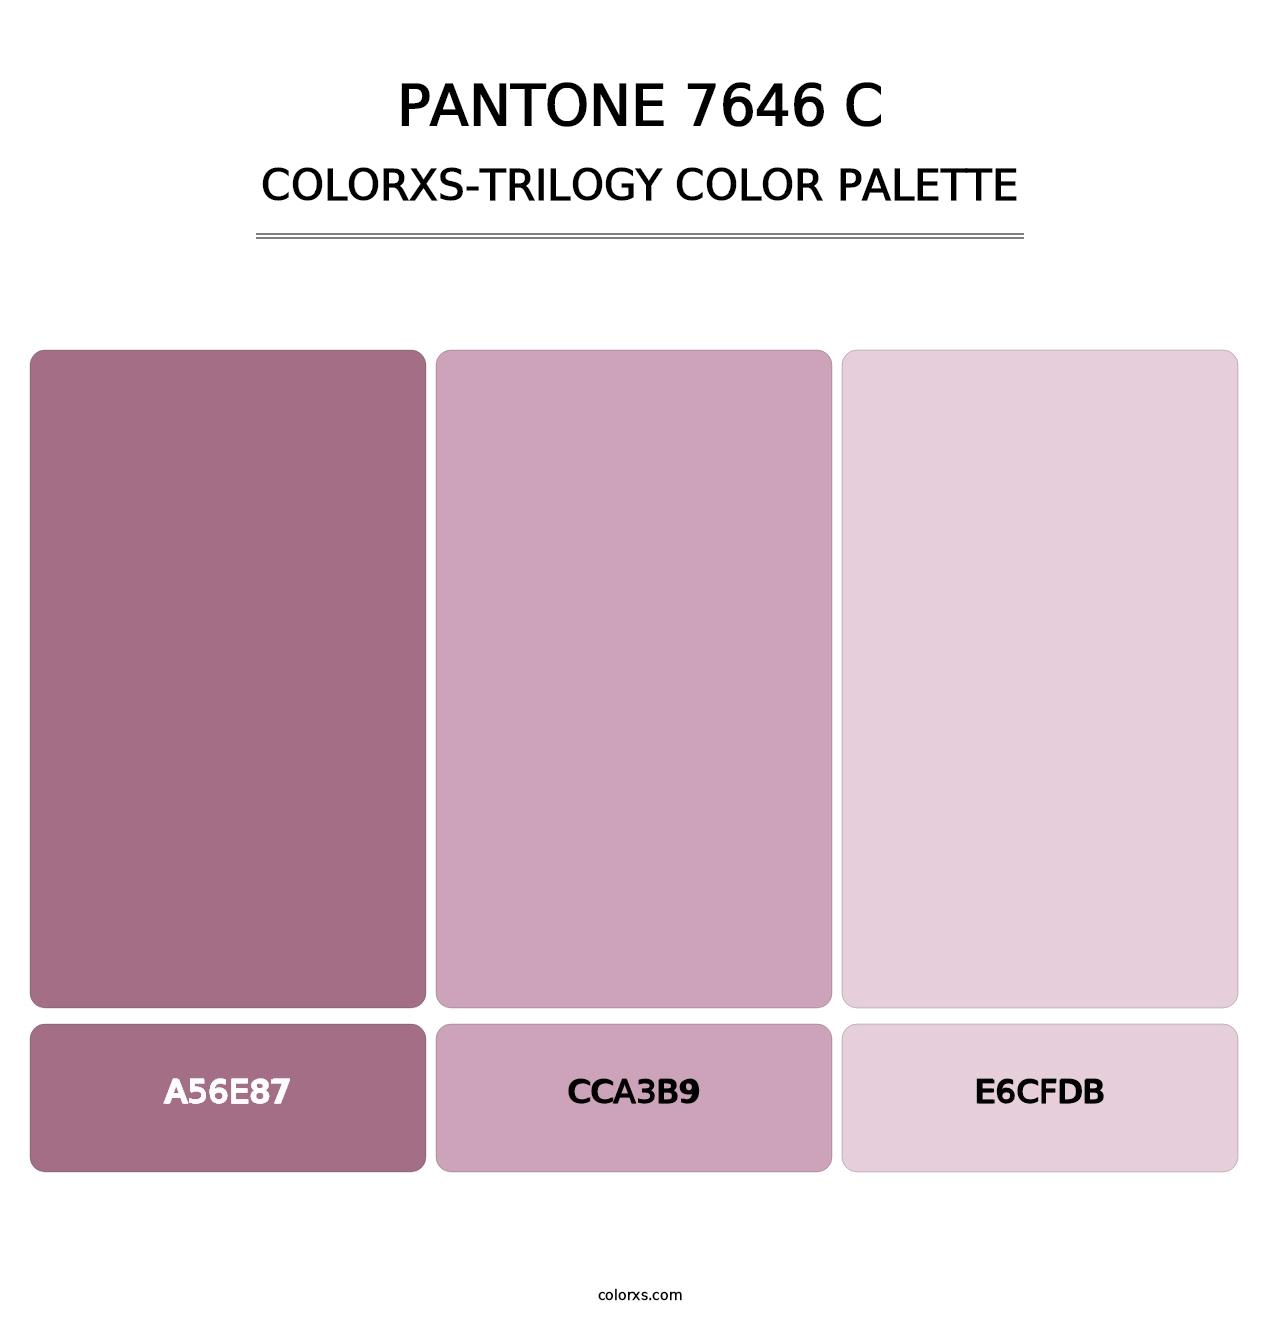 PANTONE 7646 C - Colorxs Trilogy Palette